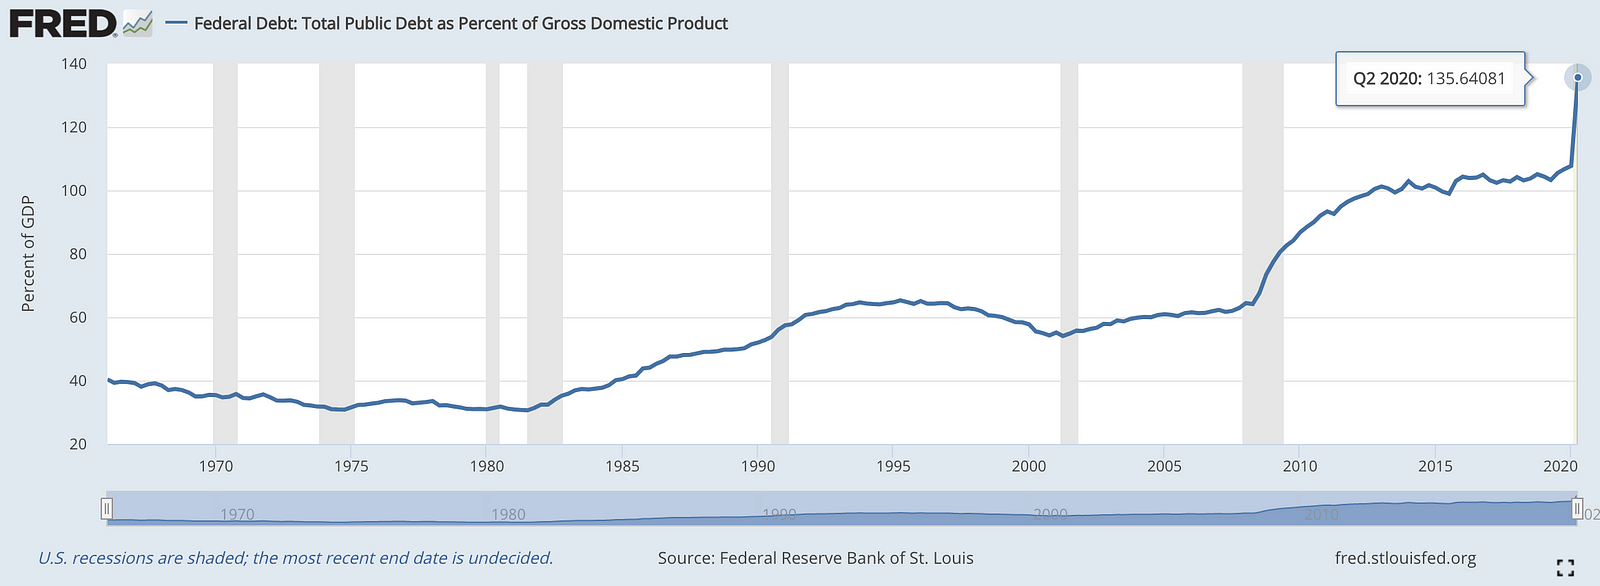 U.S. Federal Debt: Total Public Debt as Percent of GDP